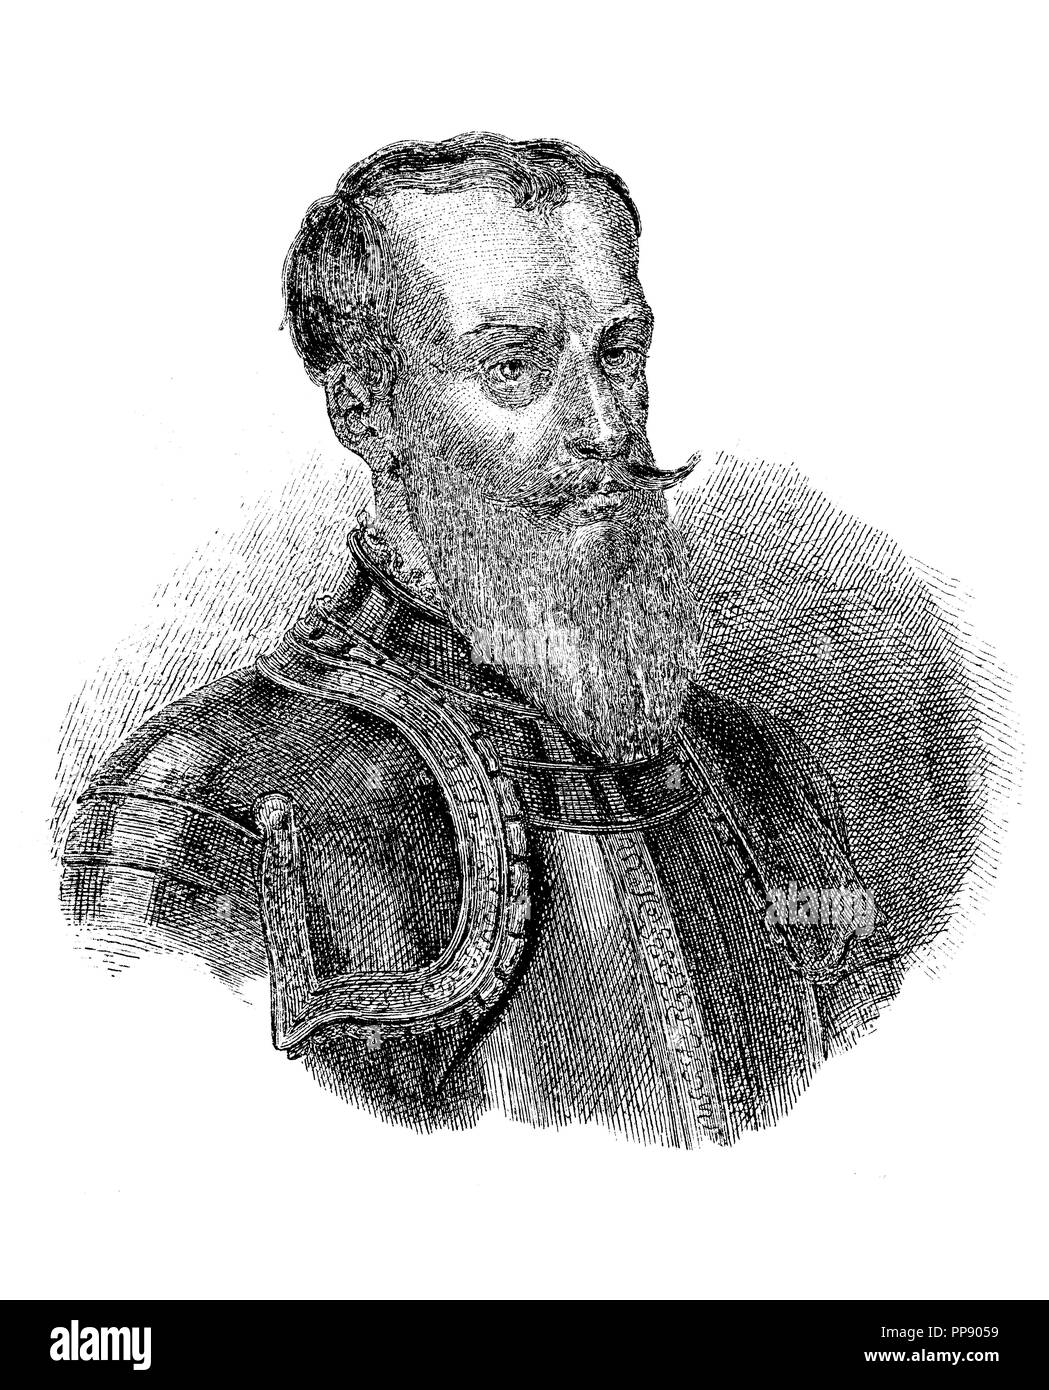 Polonia. Jan Karol Chodkiewicz (1560-1621), general polaco, comandante militar del ejército de la República de las Dos Naciones, que venció a los suecos y otomanos. Grabado de 1850. Stock Photo